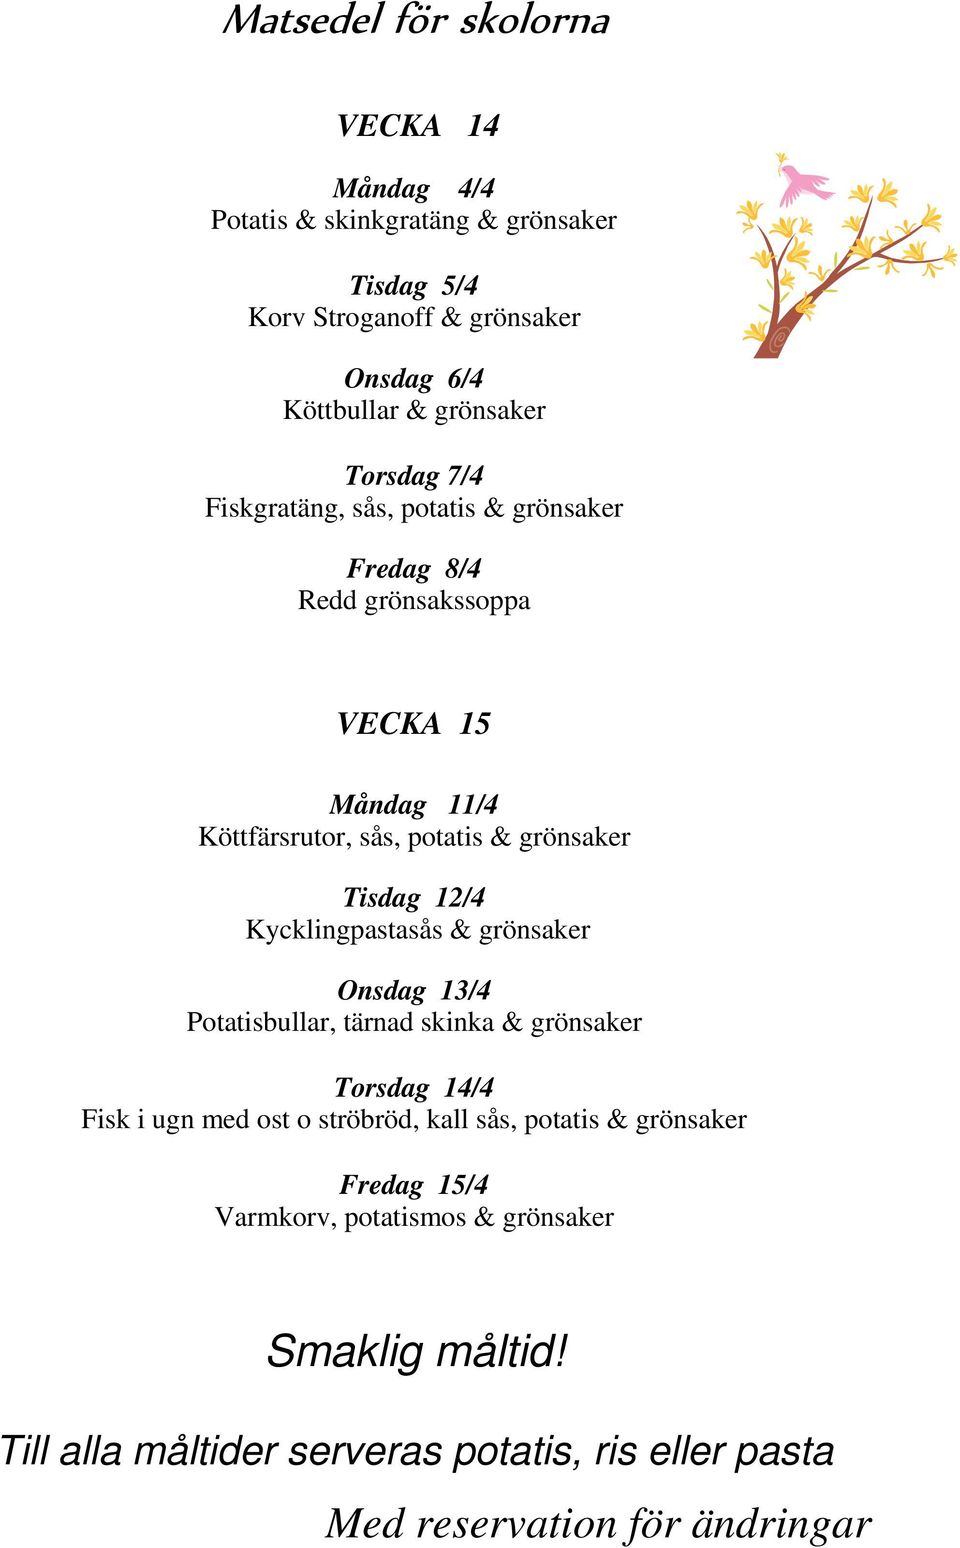 Köttfärsrutor, sås, potatis & grönsaker Tisdag 12/4 Kycklingpastasås & grönsaker Onsdag 13/4 Potatisbullar, tärnad